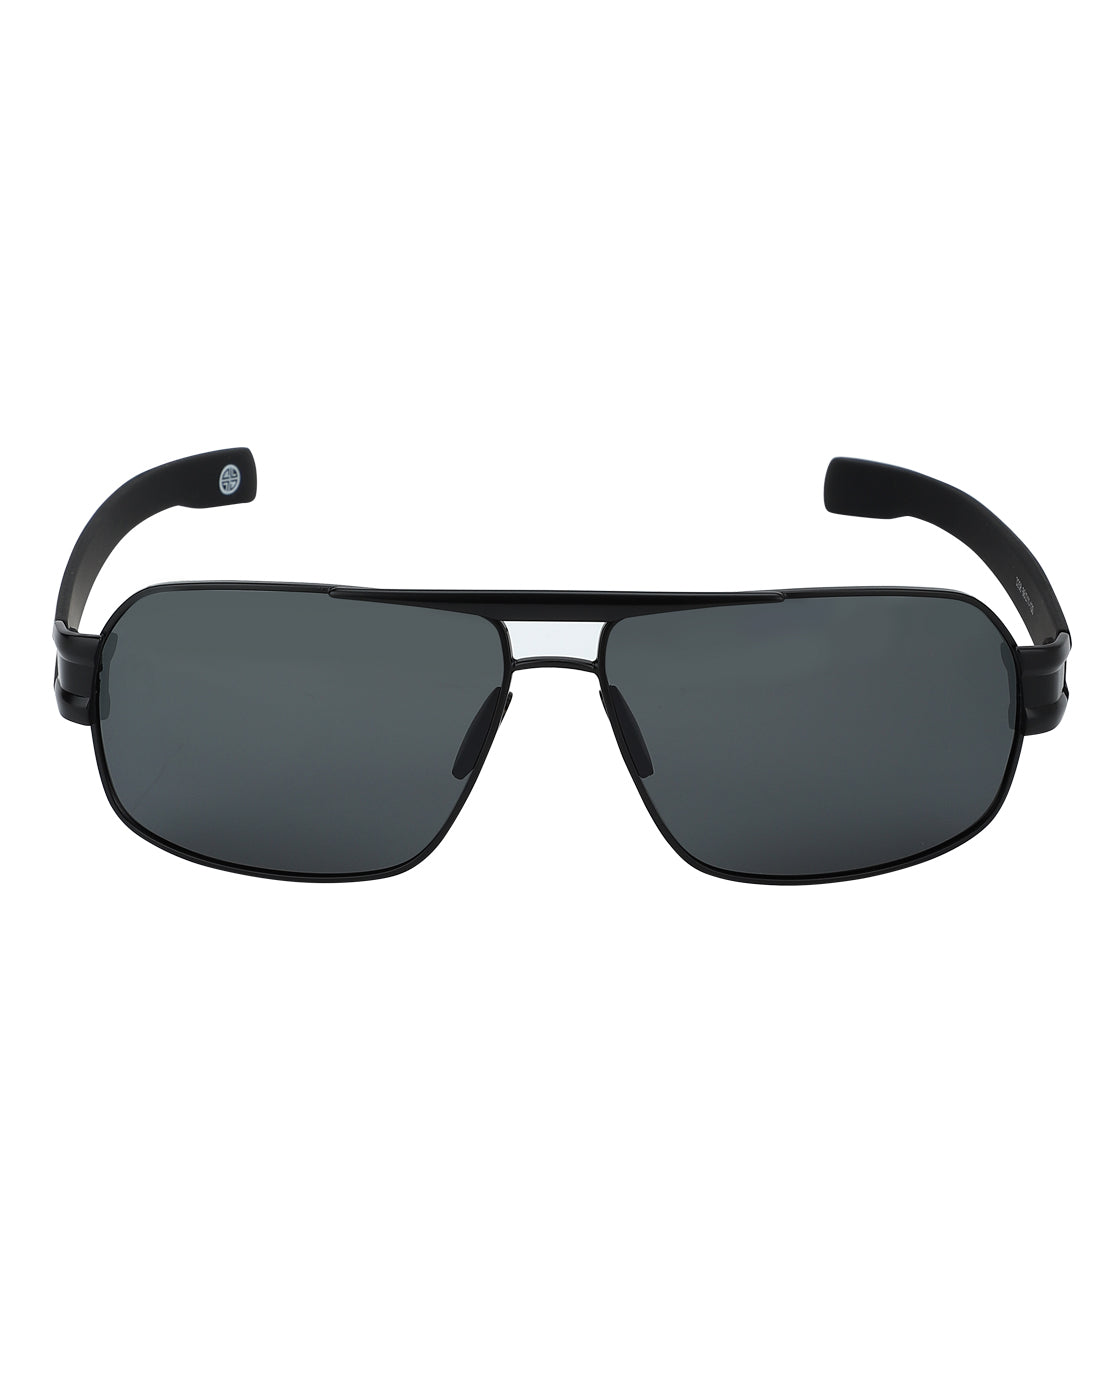 Carlton London Polarised Rectangle Sunglasses For Men